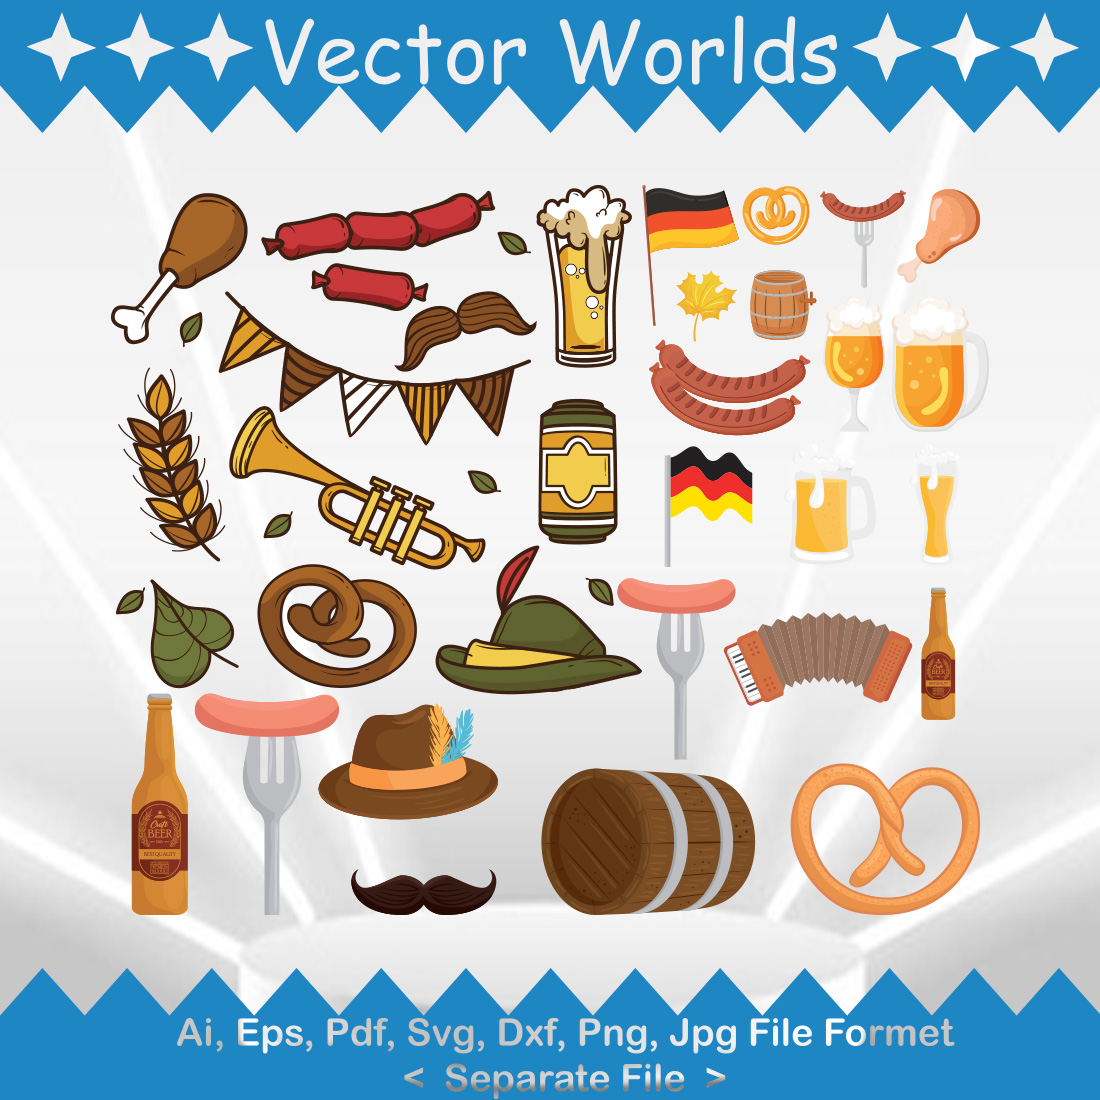 Oktoberfest SVG Vector Design cover image.